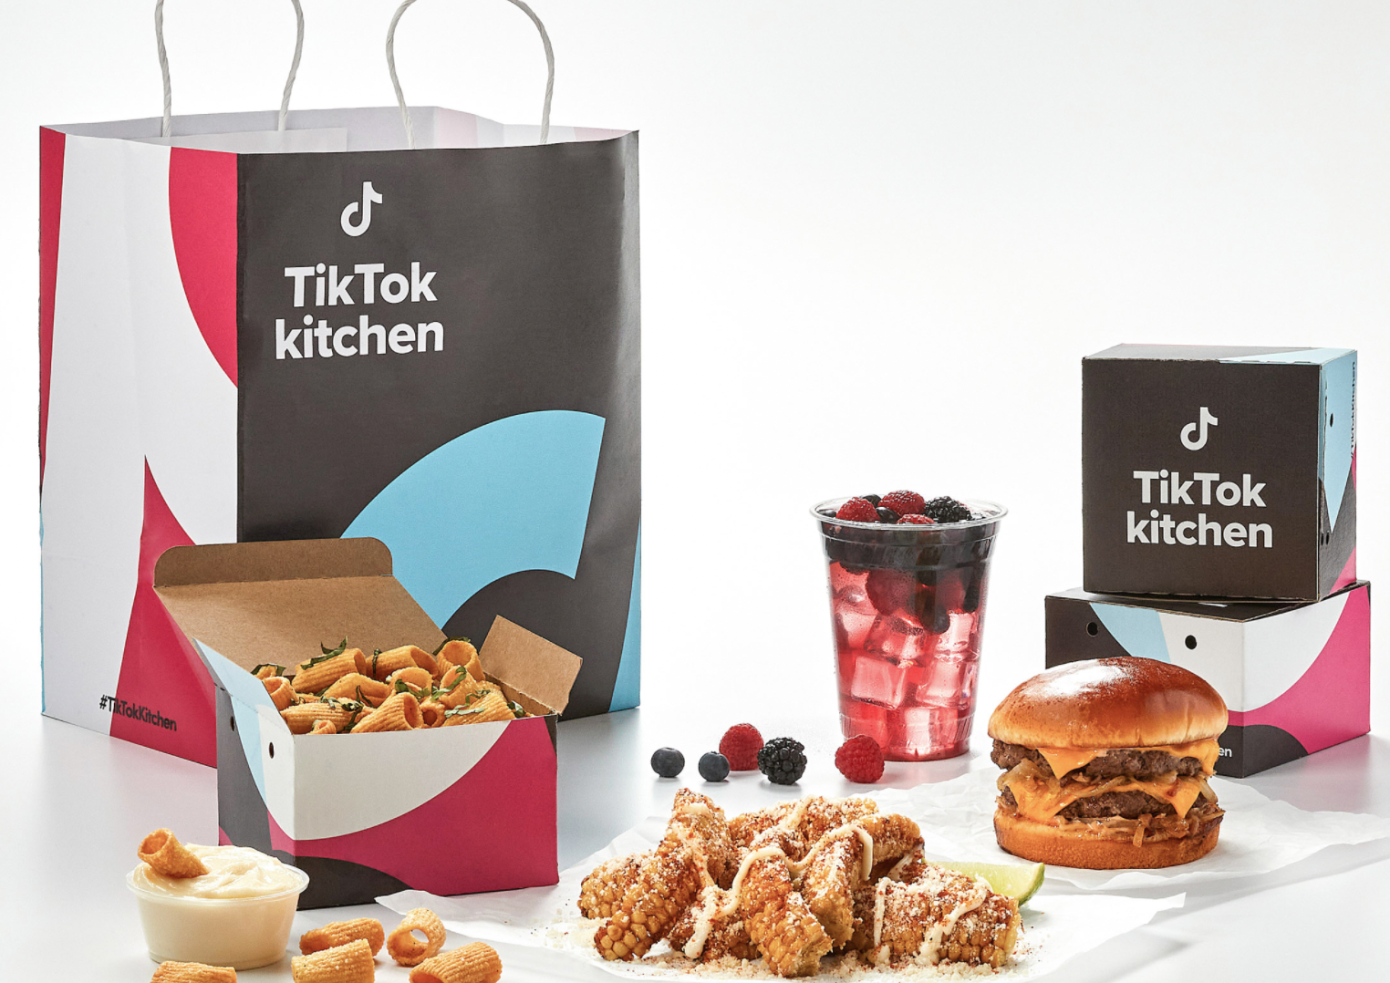 TikTok lên kế hoạch mở chuỗi nhà hàng giao hàng tận nơi “TikTok Kitchen”- Ảnh 1.